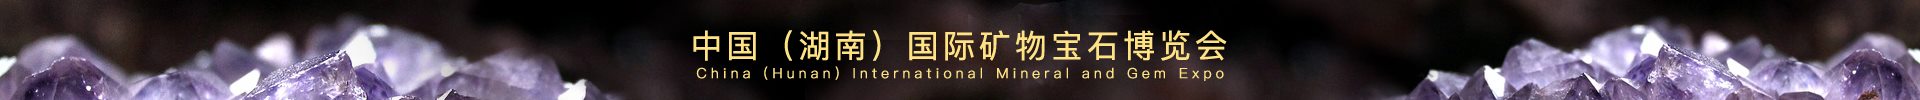 网站顶部广告位-中国（湖南）国际矿物宝石博览会